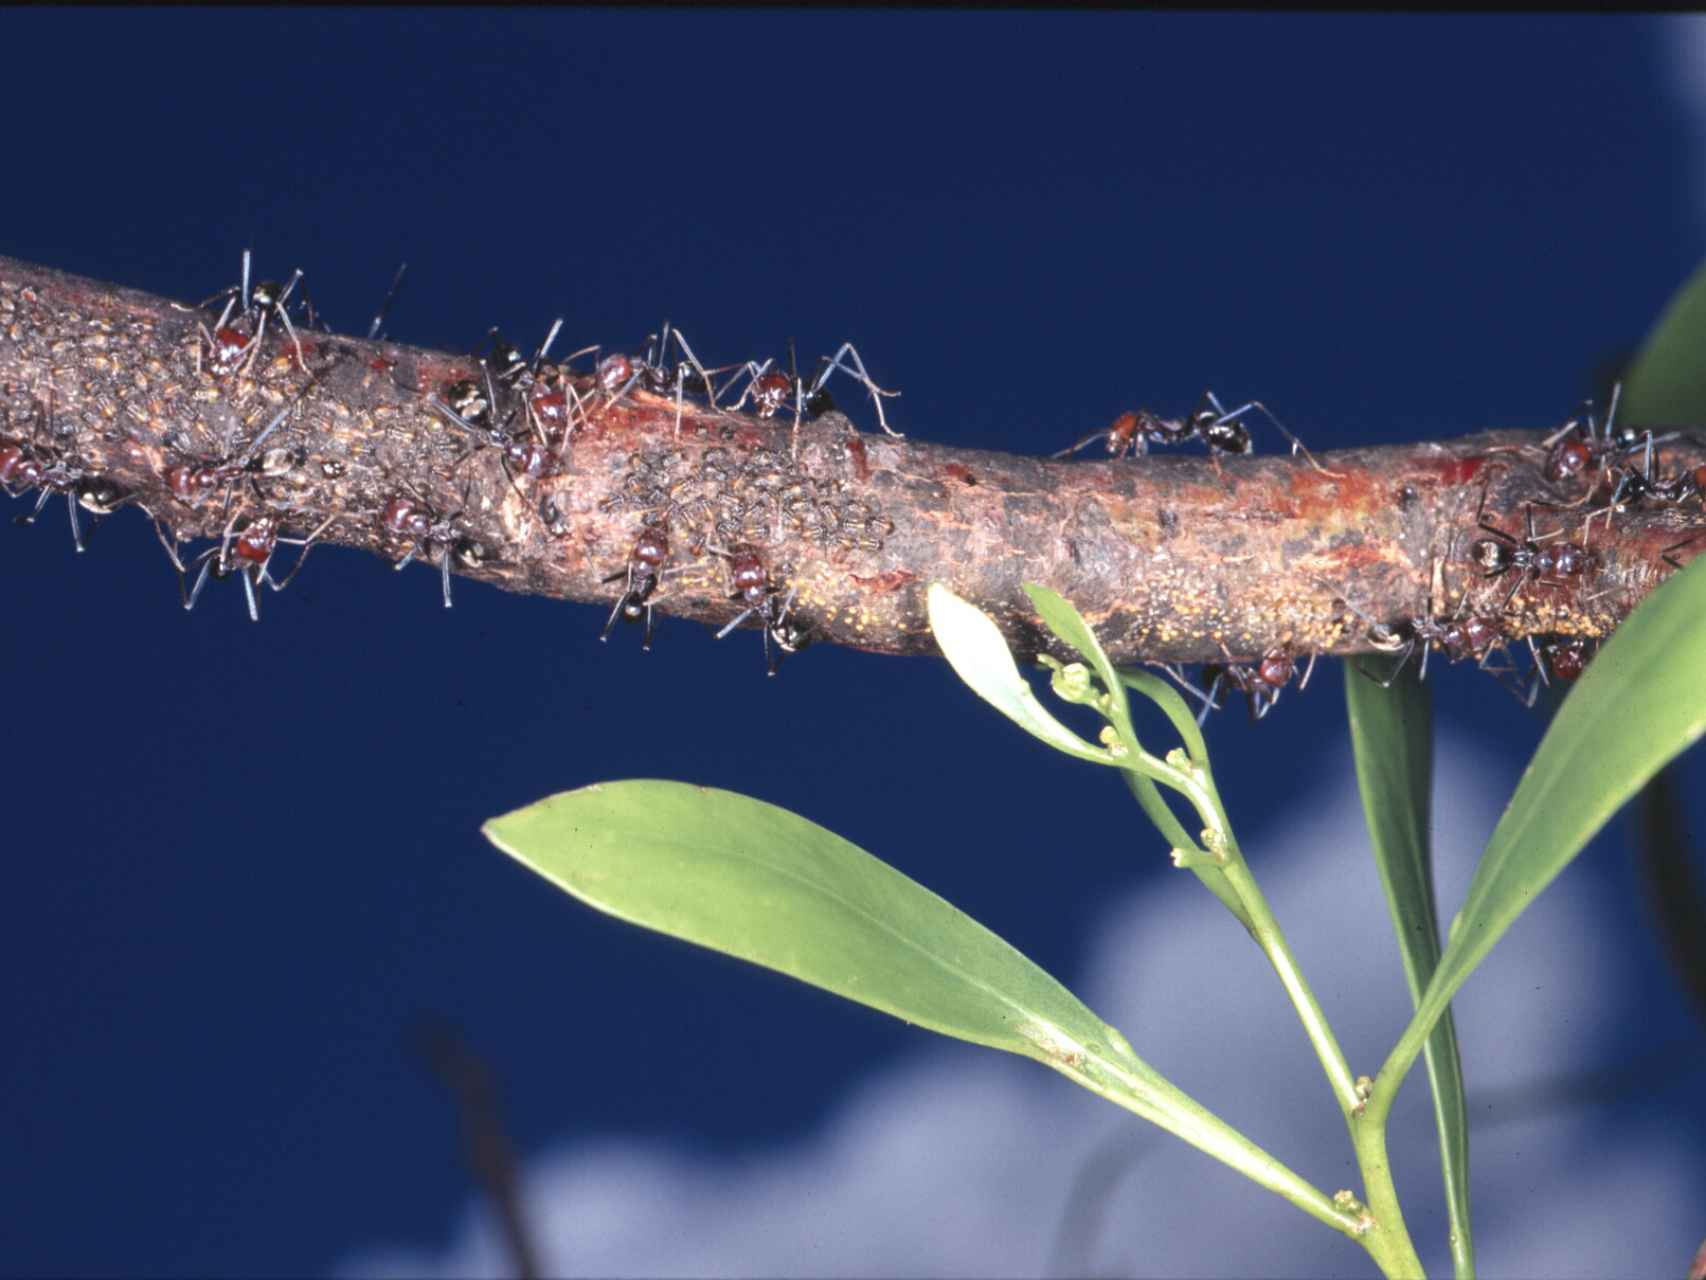 La búsqueda de alimento condiciona las redes de las hormigas.